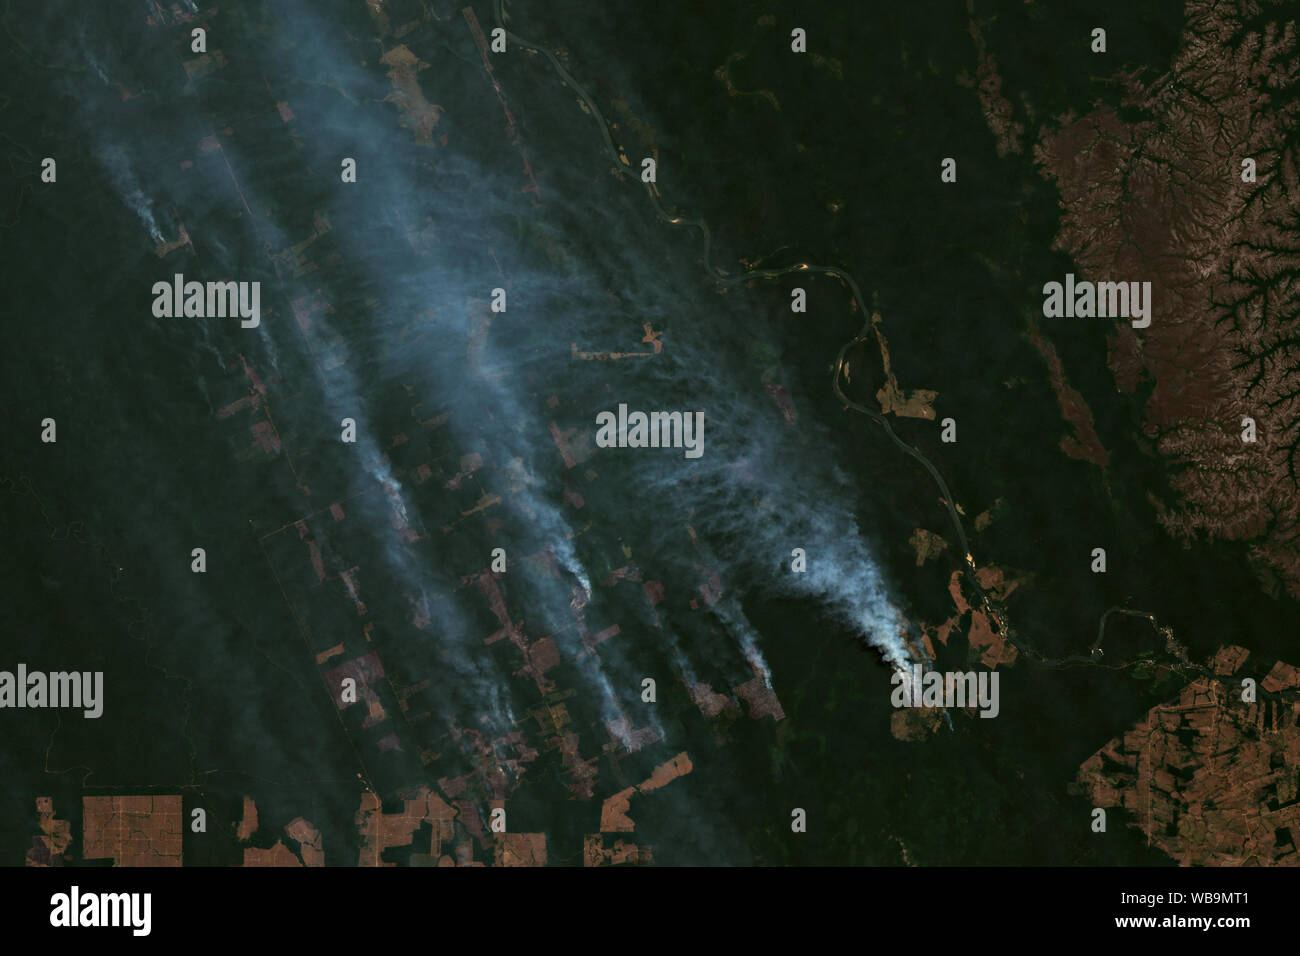 Les incendies et le déboisement des modèles dans la forêt amazonienne en août 2019 dans la région de Rondônia au Brésil - contient des données Sentinel Copernicus modifiés (2019) Banque D'Images